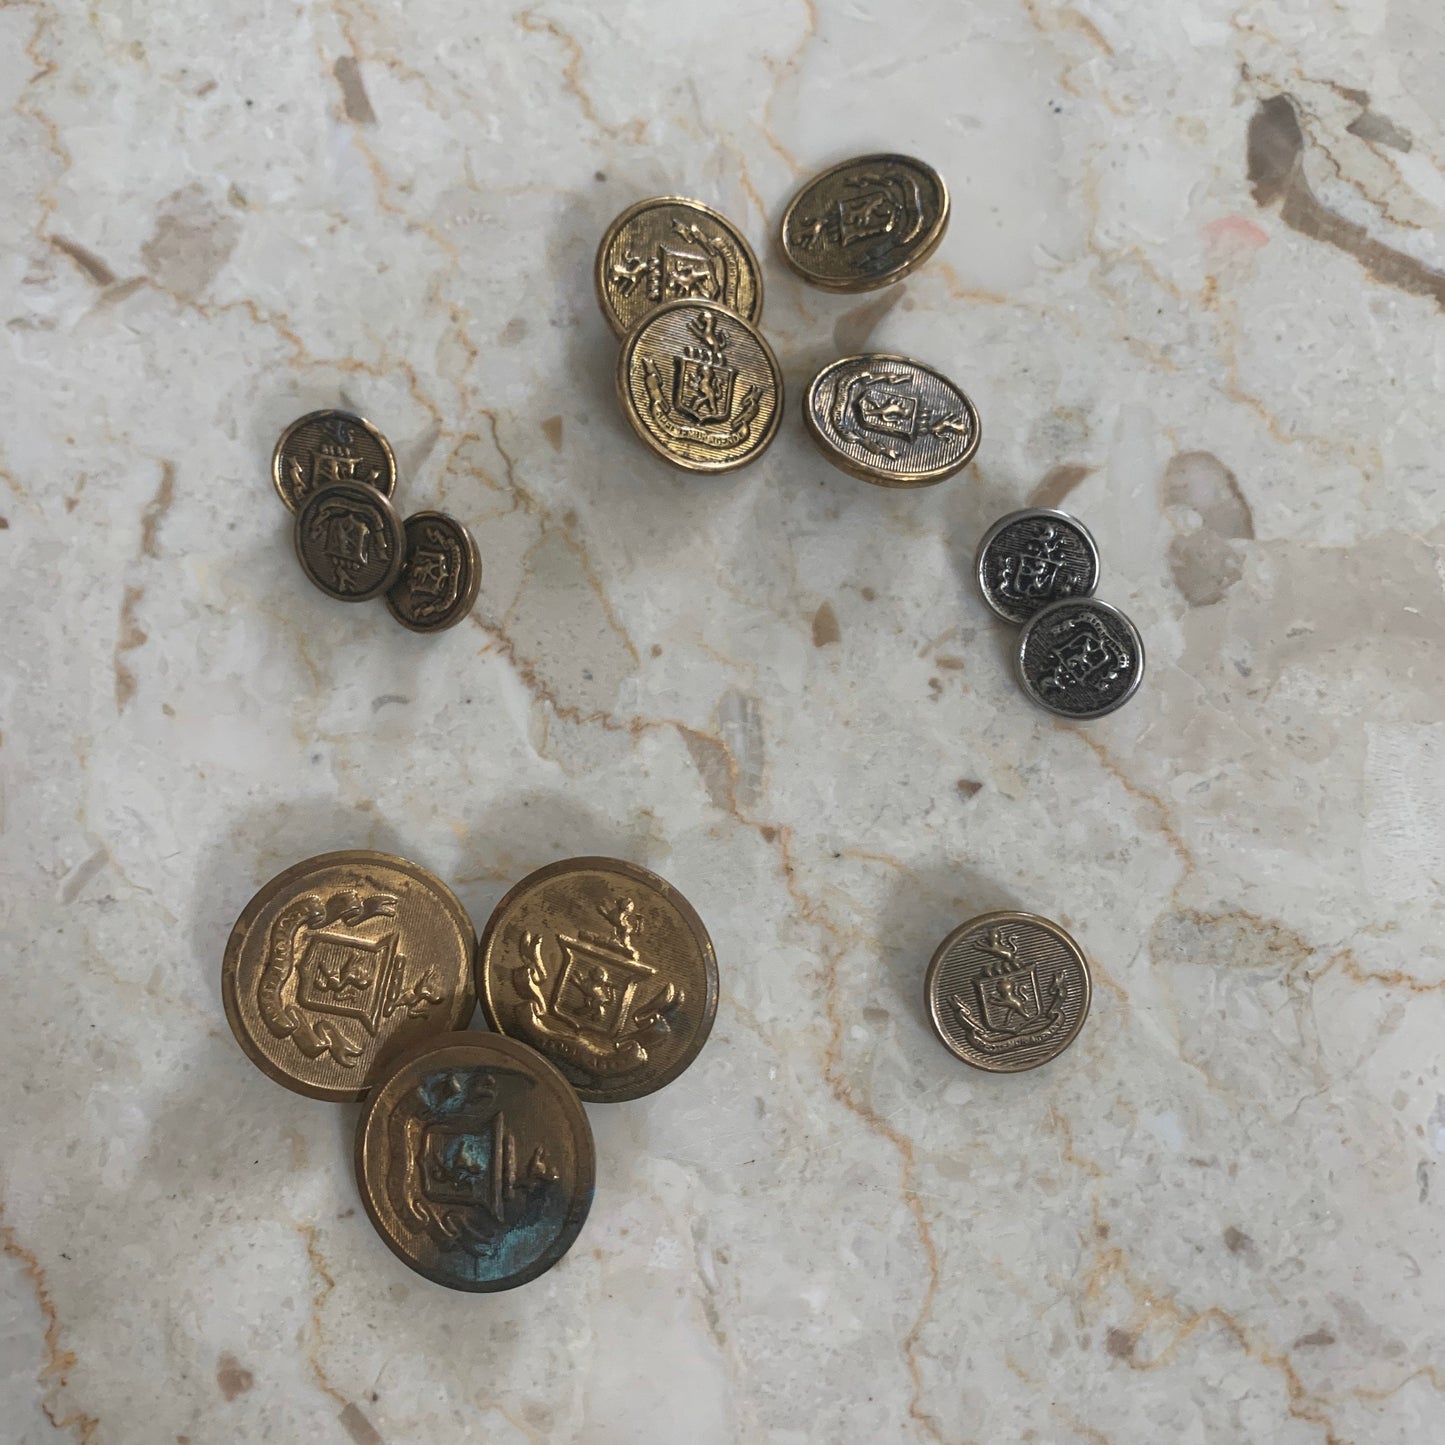 Vintage Brass Button Lot of 11 Spectemur Agendo Lion Crest